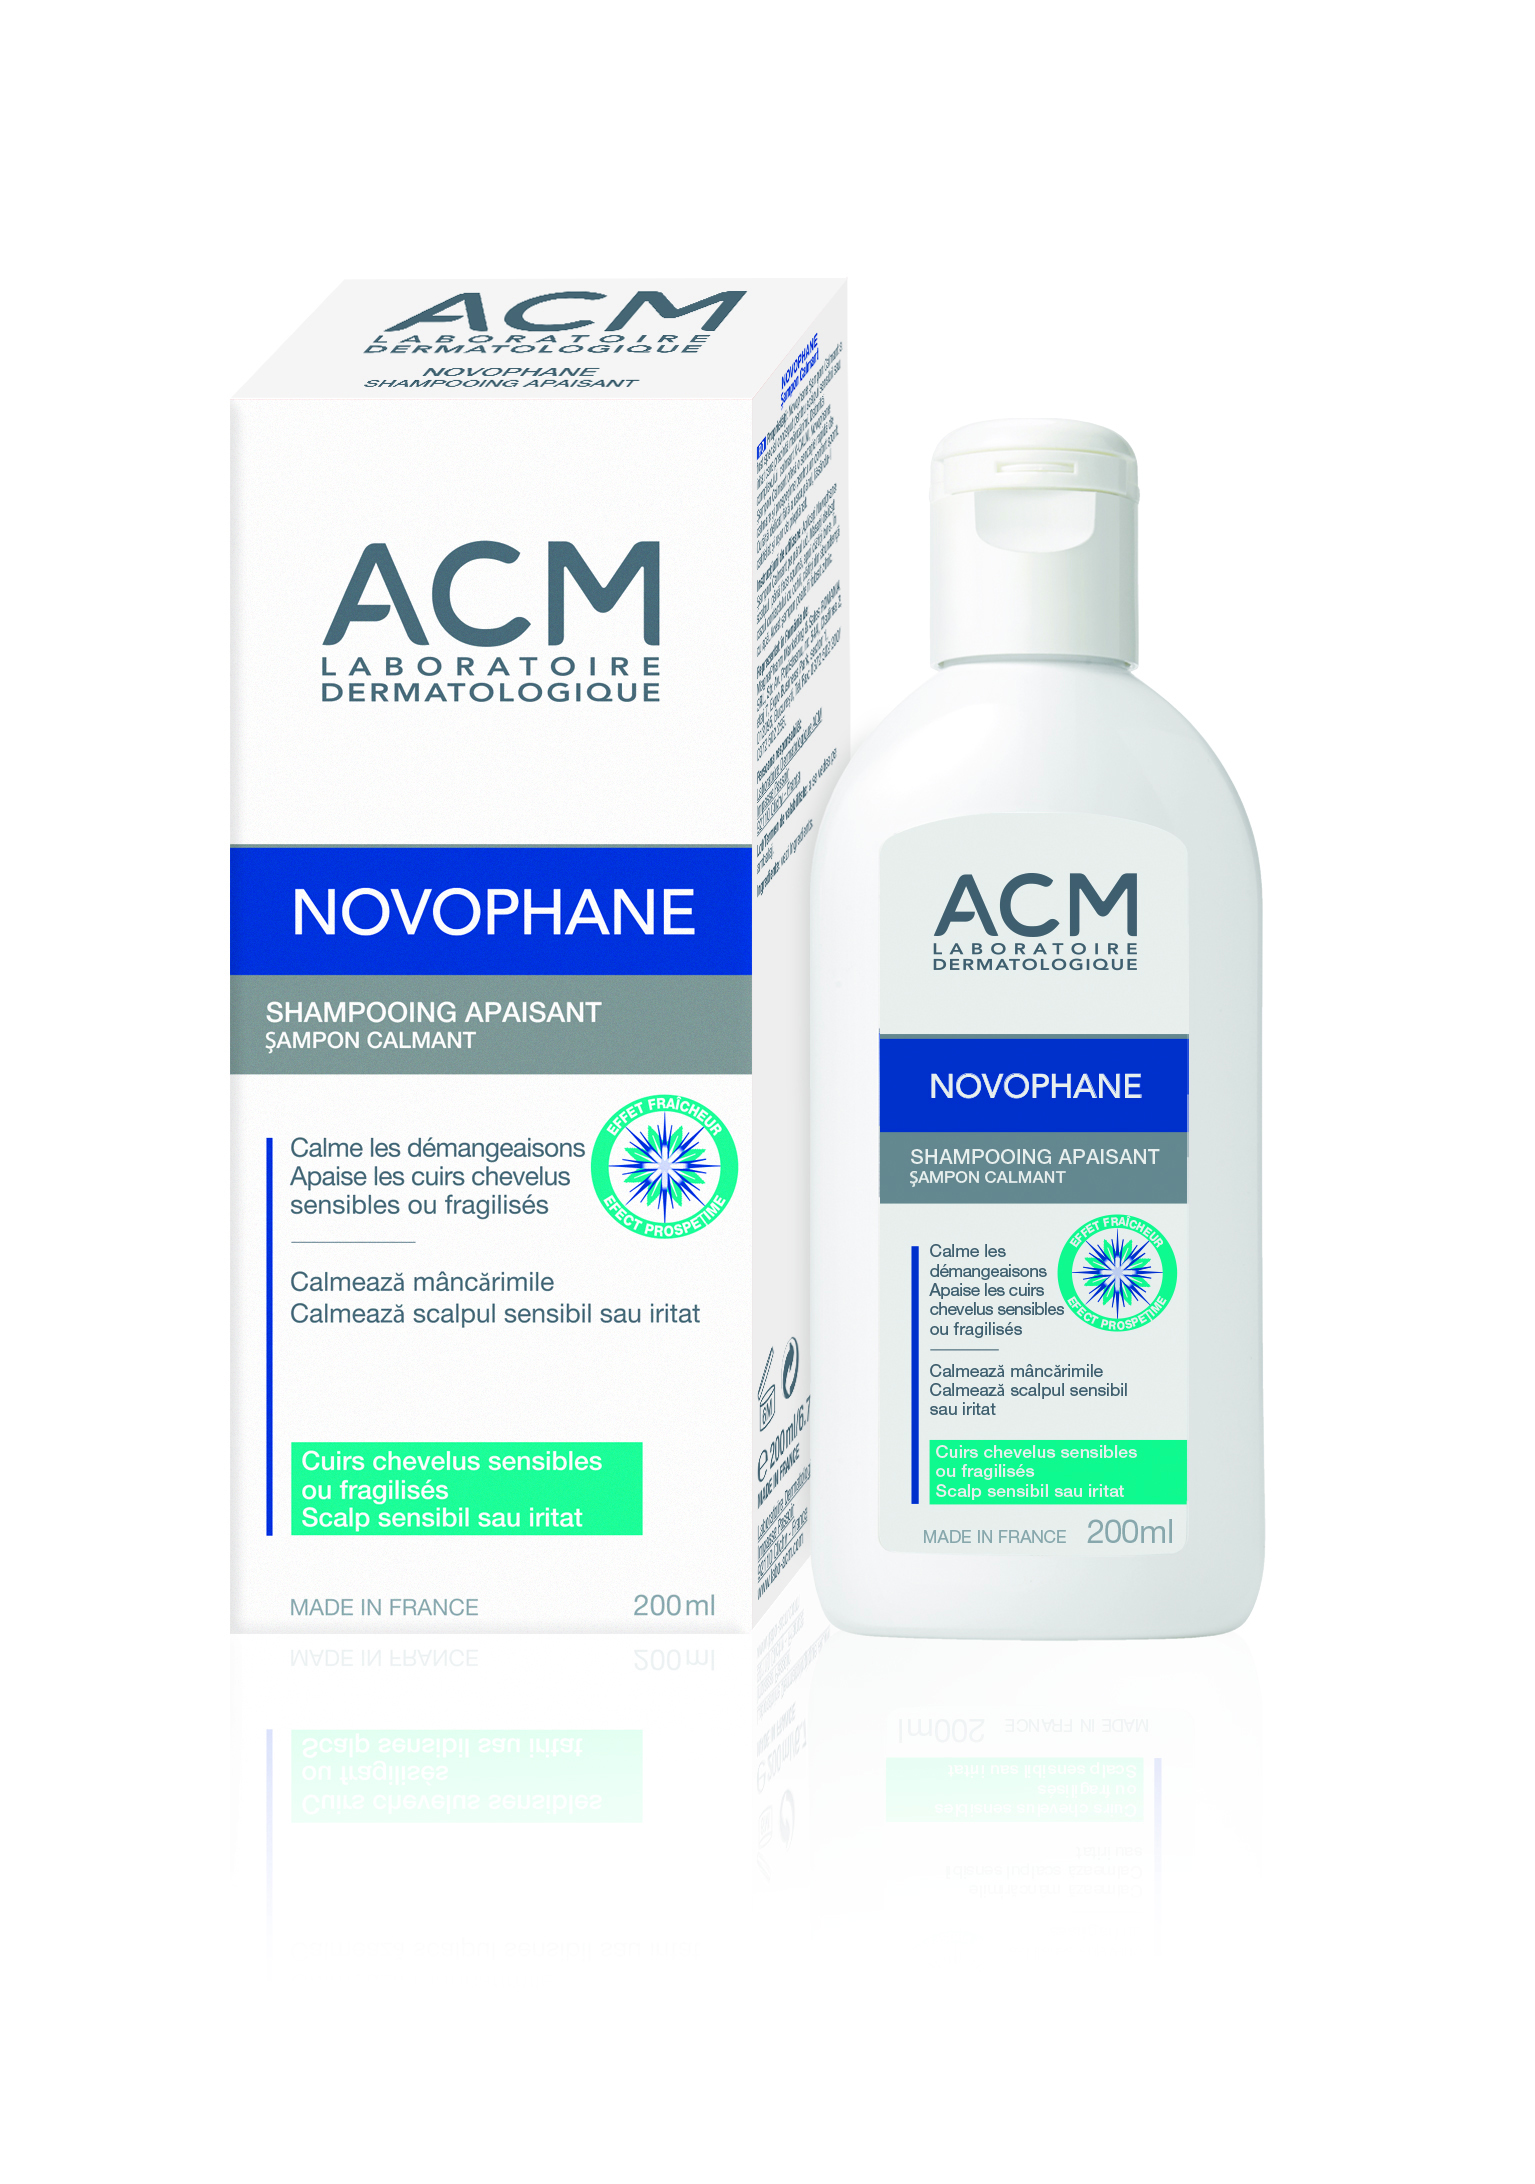 Sampon - ACM Novophane Sampon Calmant, 200 ml, sinapis.ro